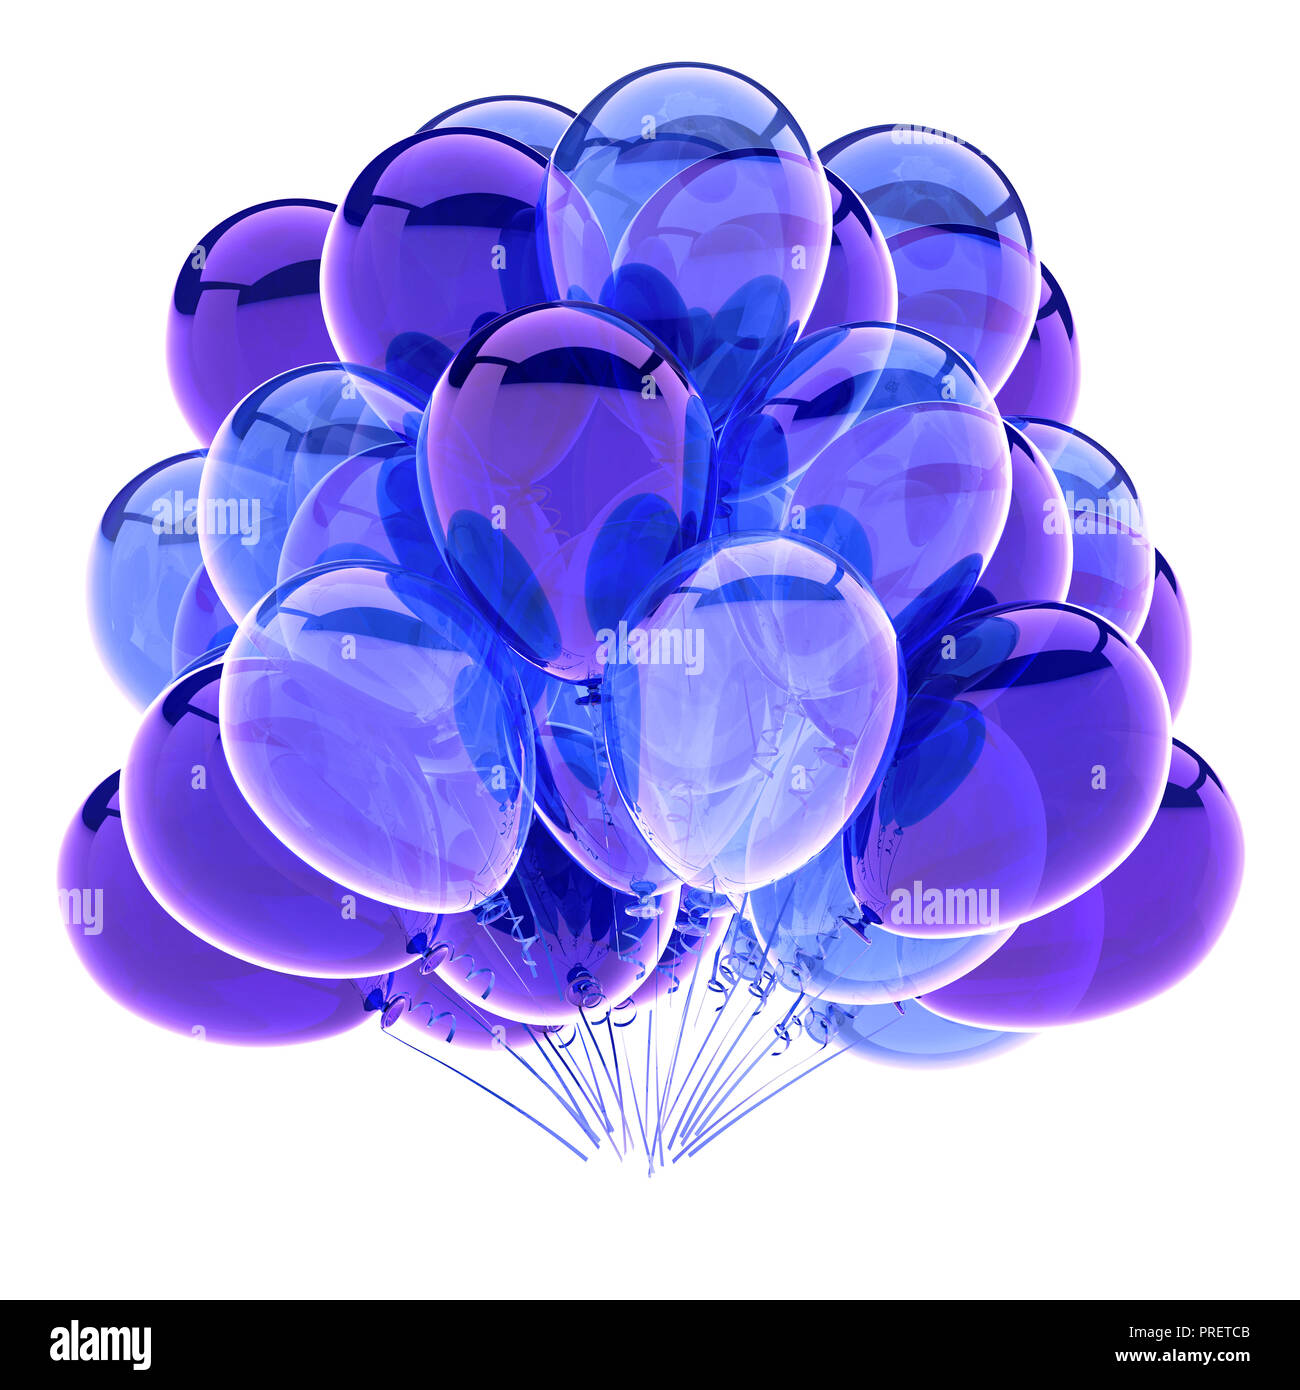 Bouquet de ballons couleurs bleu pour anniversaire 1 an